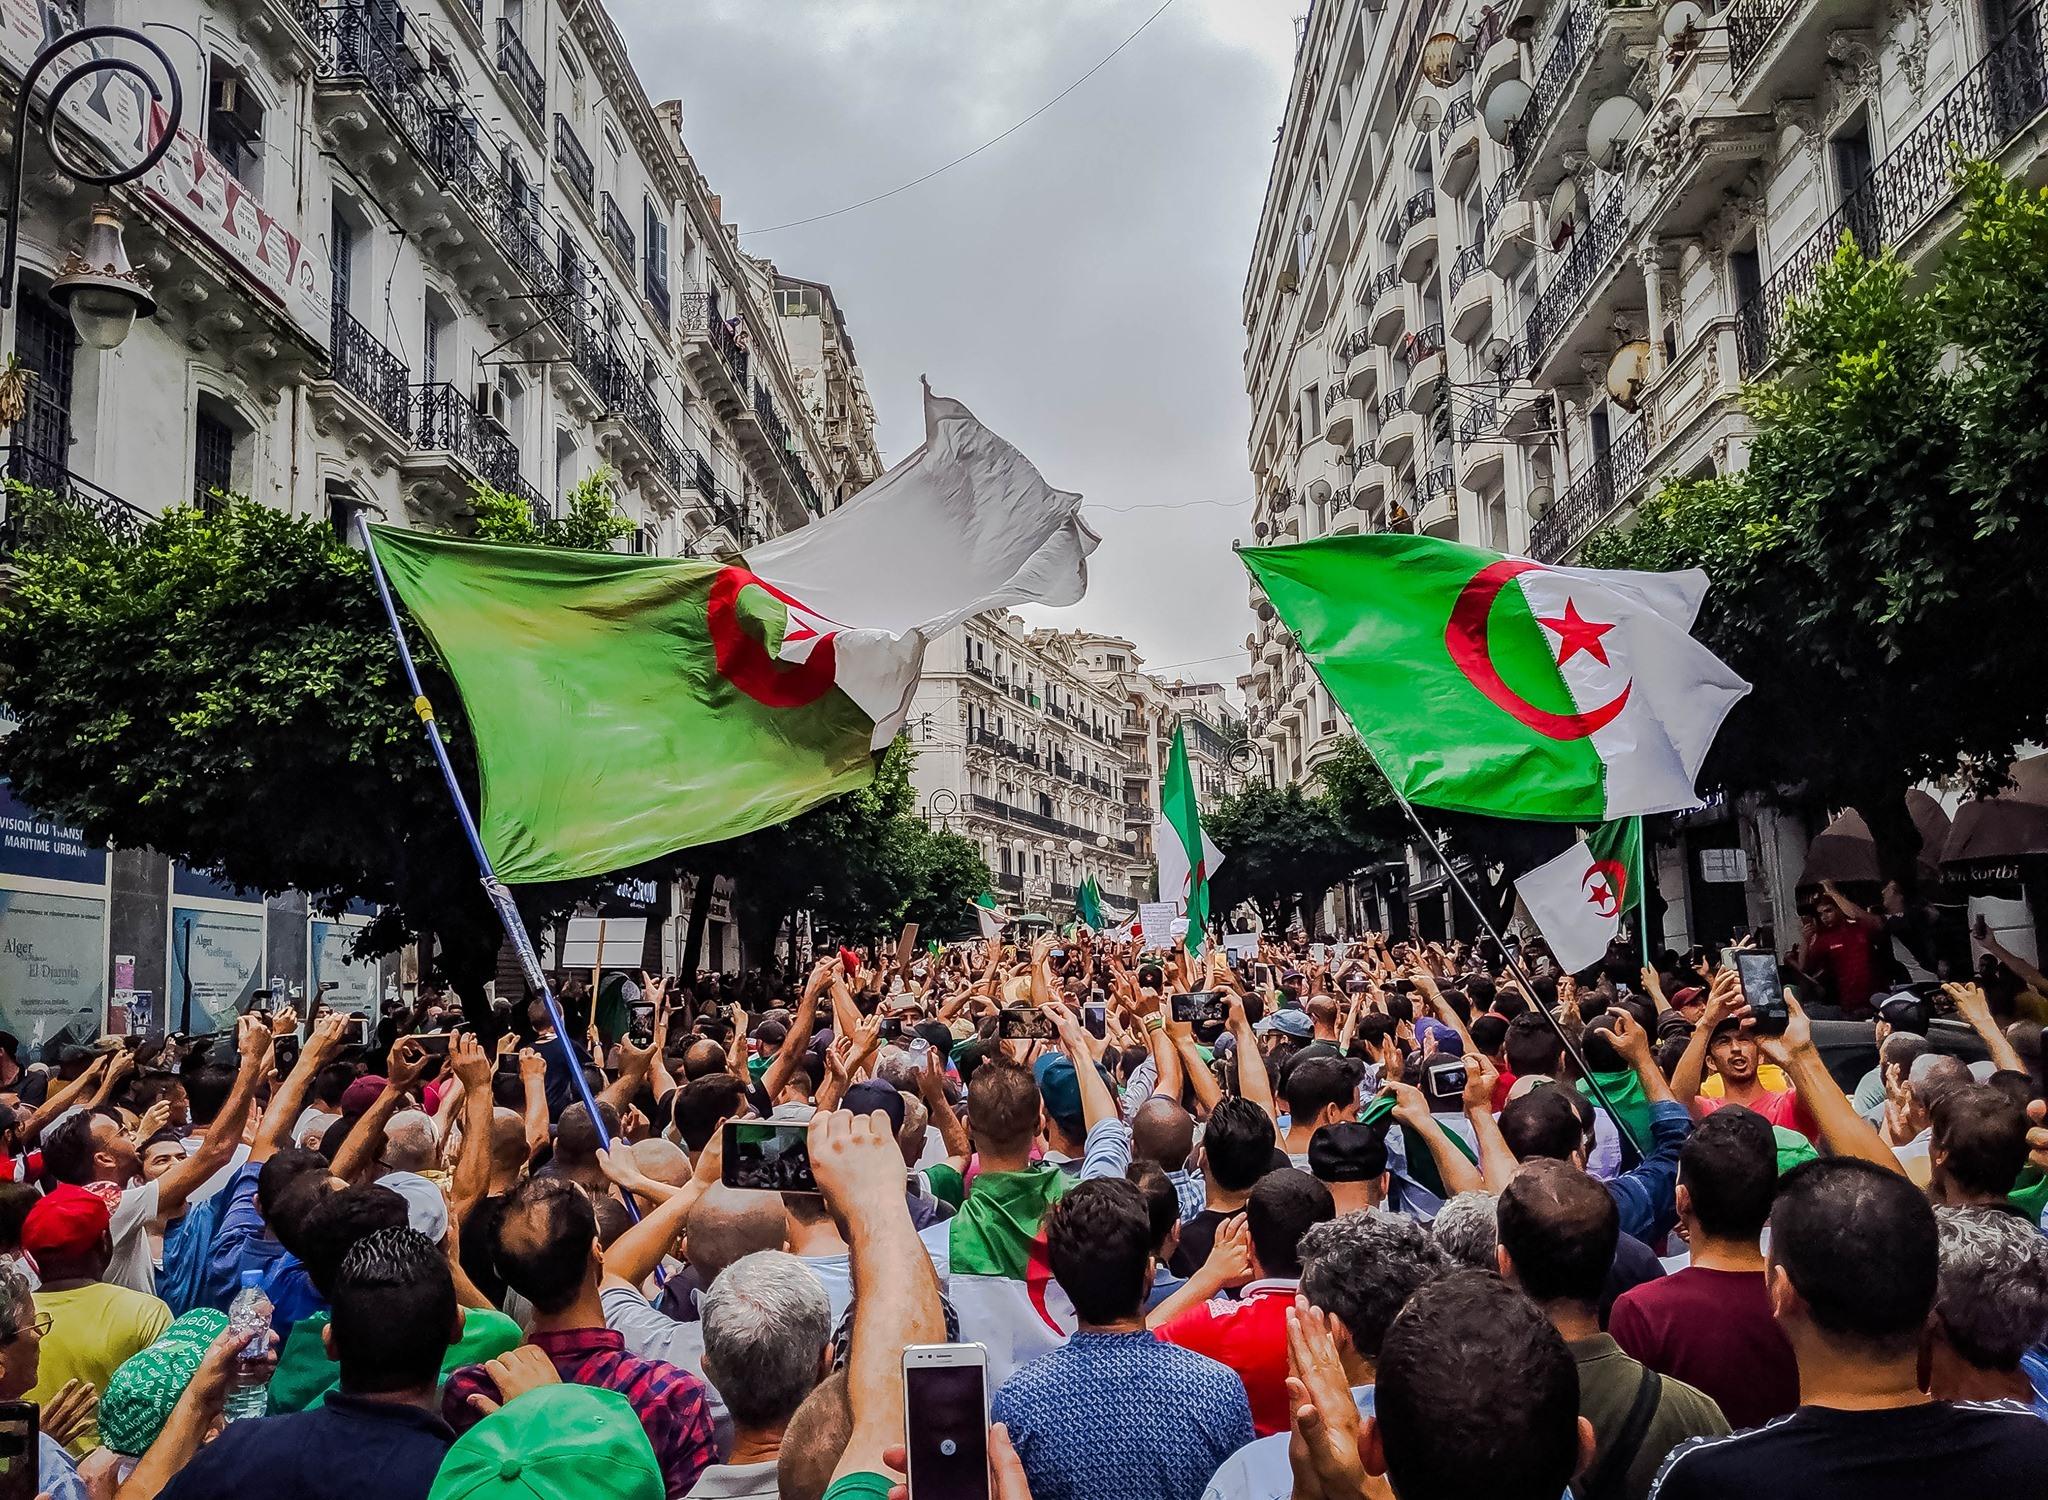 ماريان: سعي الجزائر المحموم إلى البحث عن أعداء وهميين سياسة "عفا عليها الزمن"